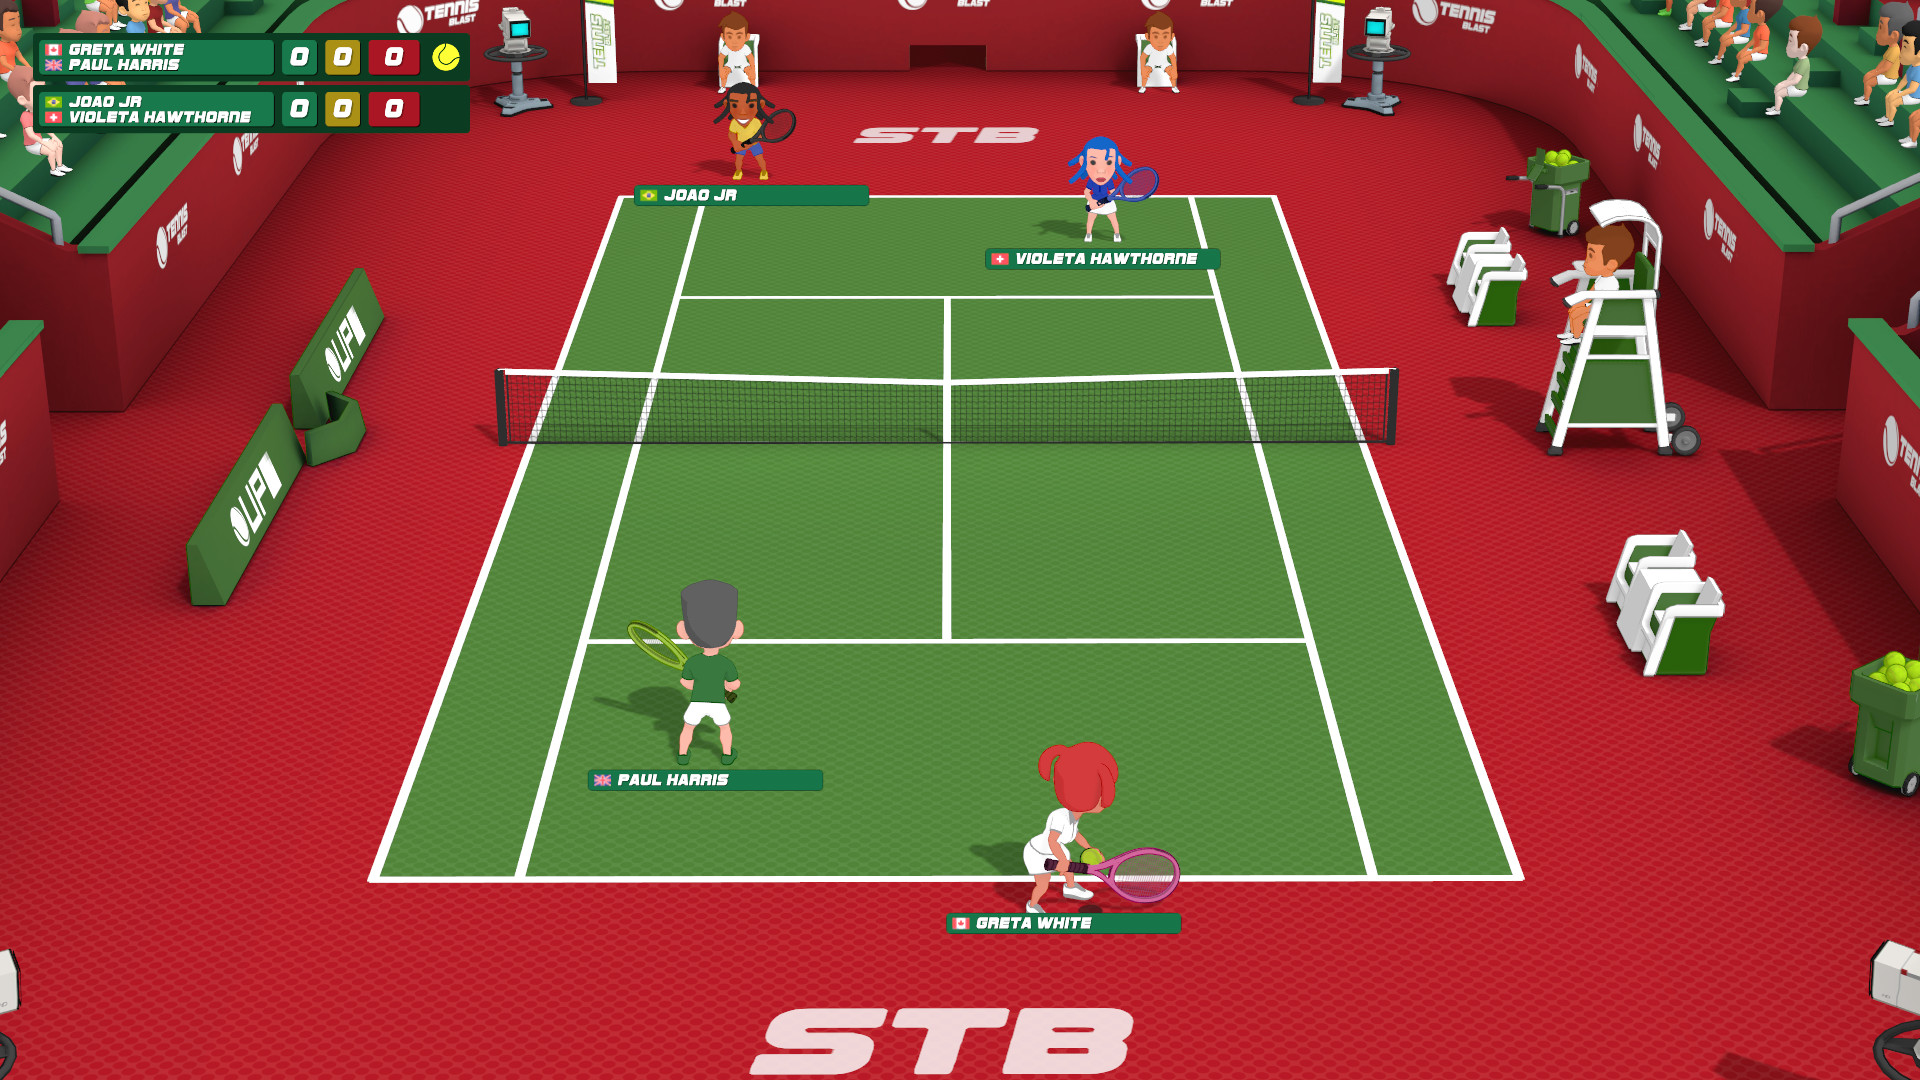 Super Tennis Blast on Steam